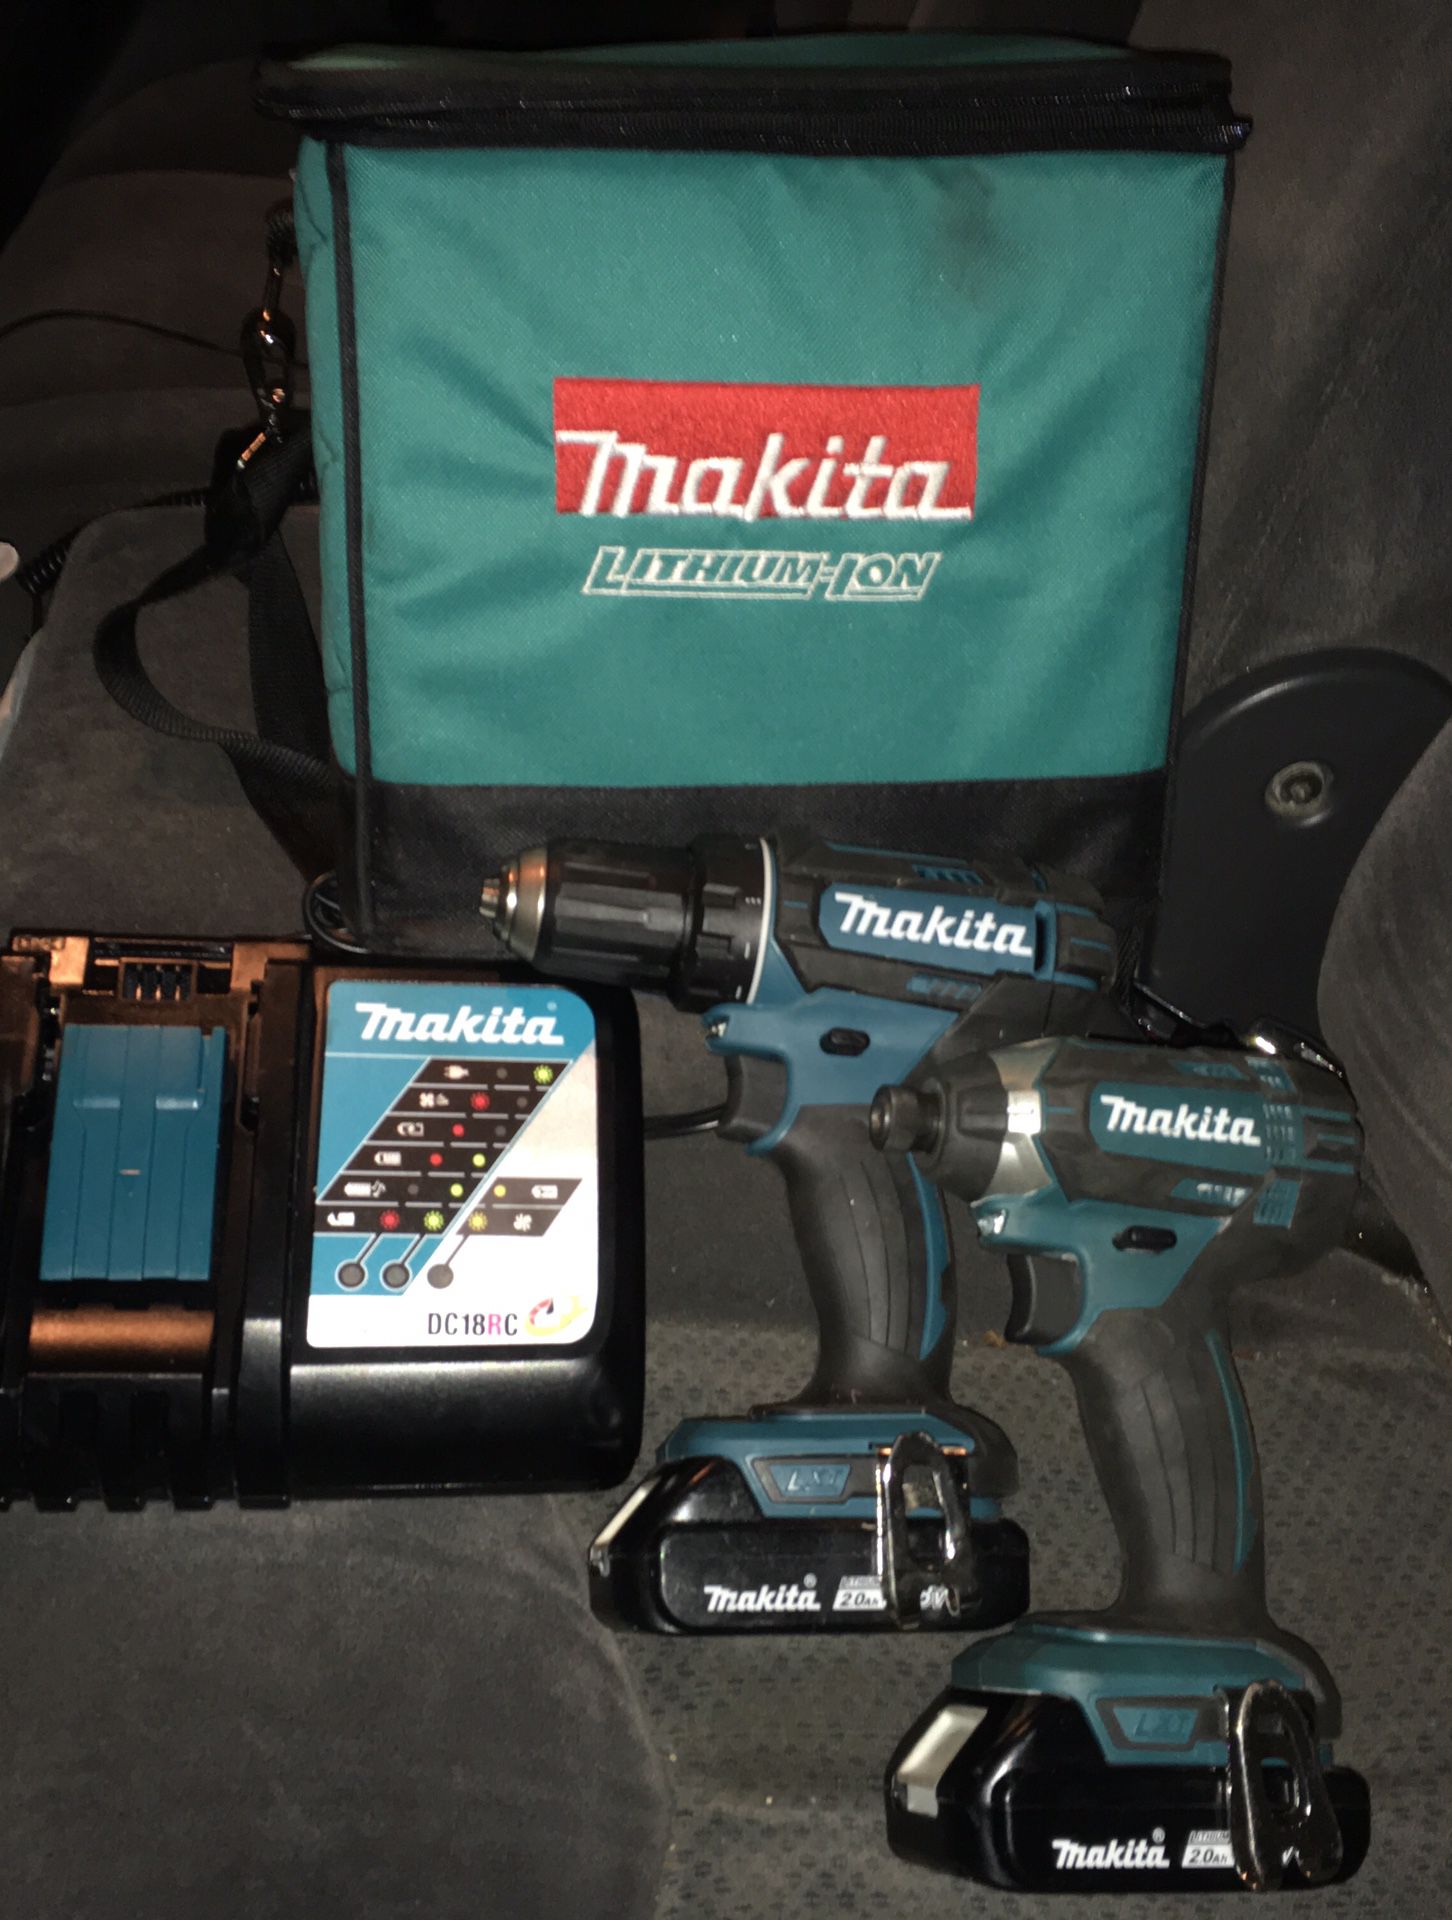 Makita tool set